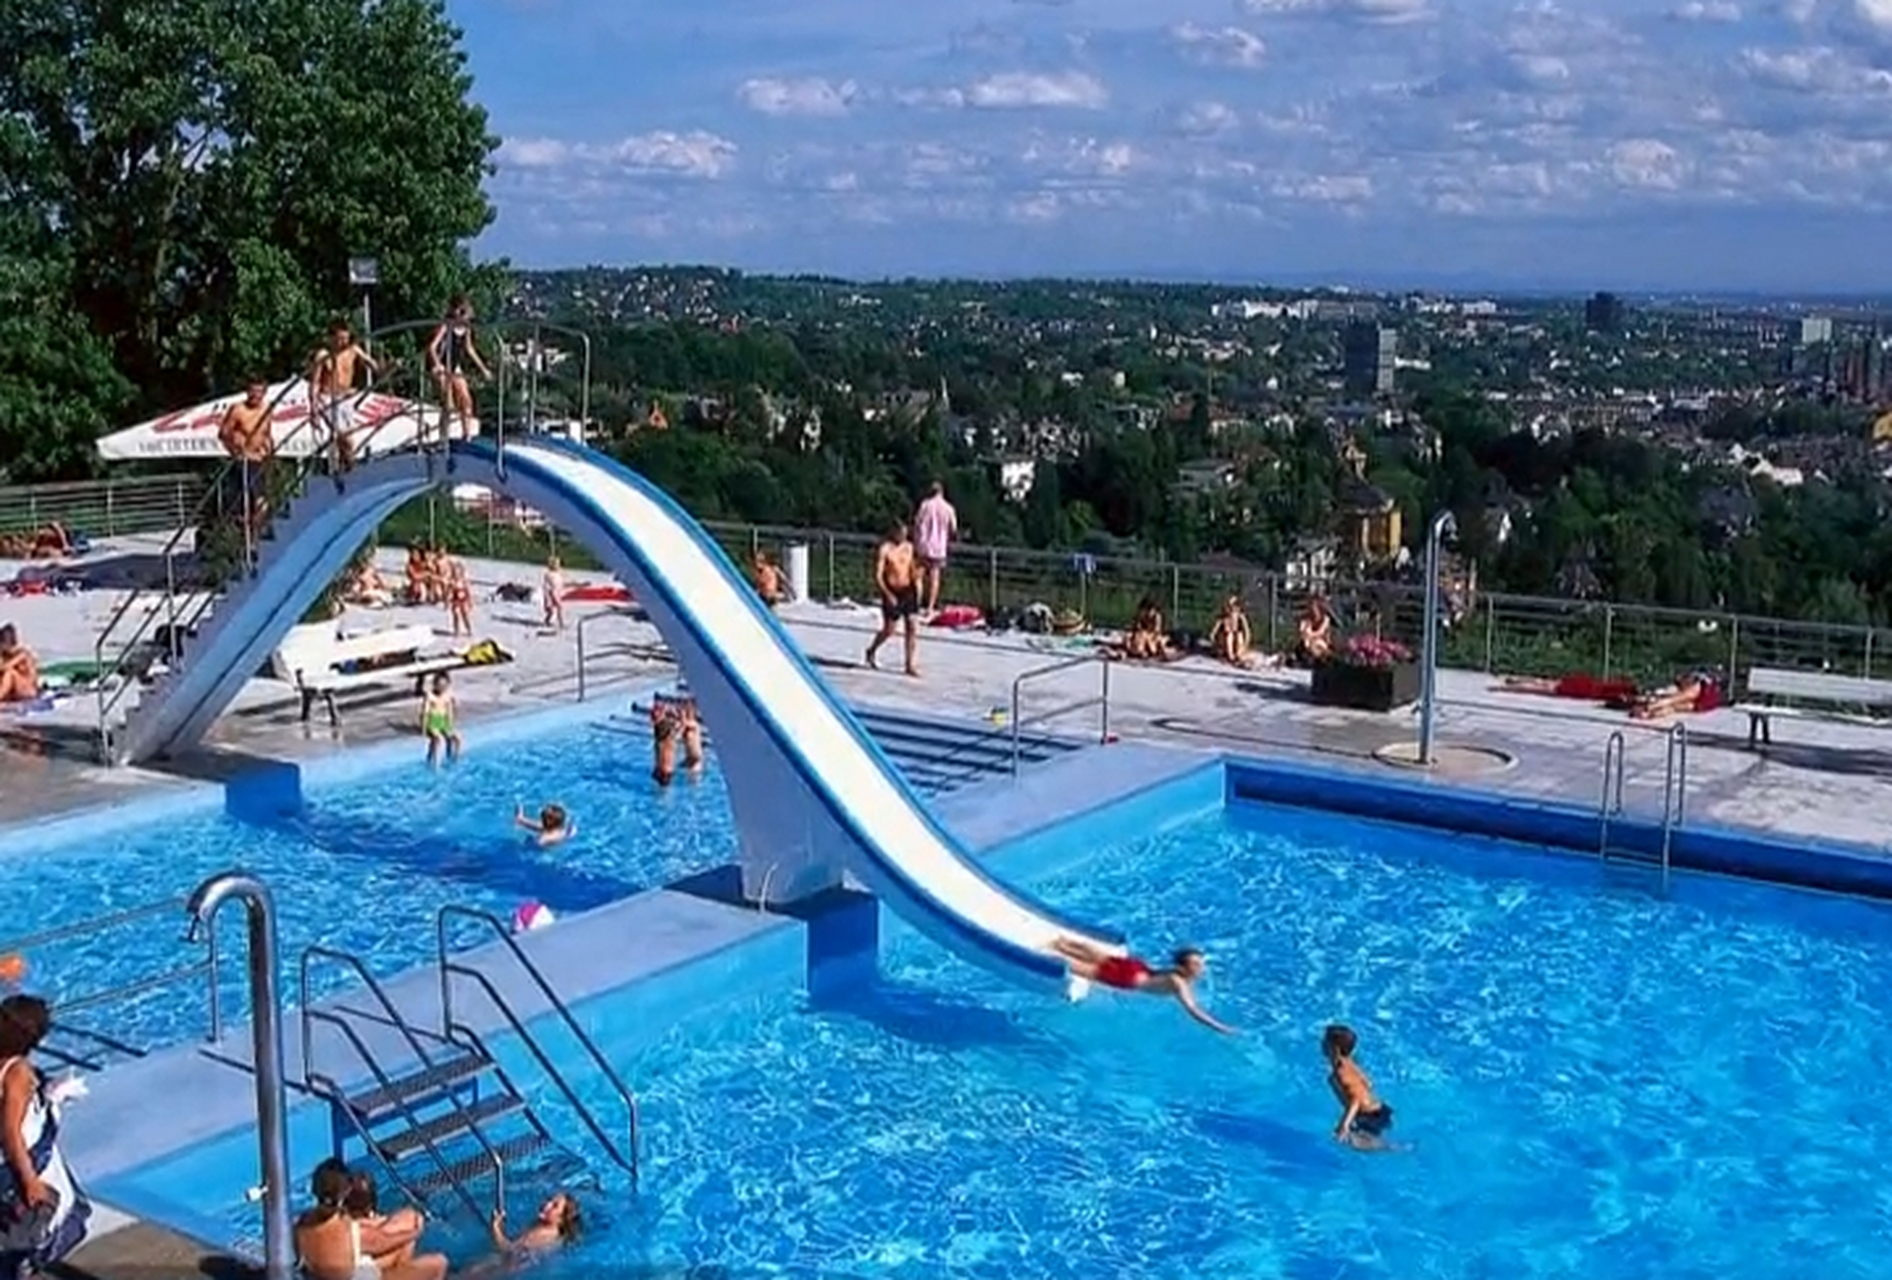 据外媒报道,德国泳池最新规定,为了提倡男女平等,允许女性游泳时不穿